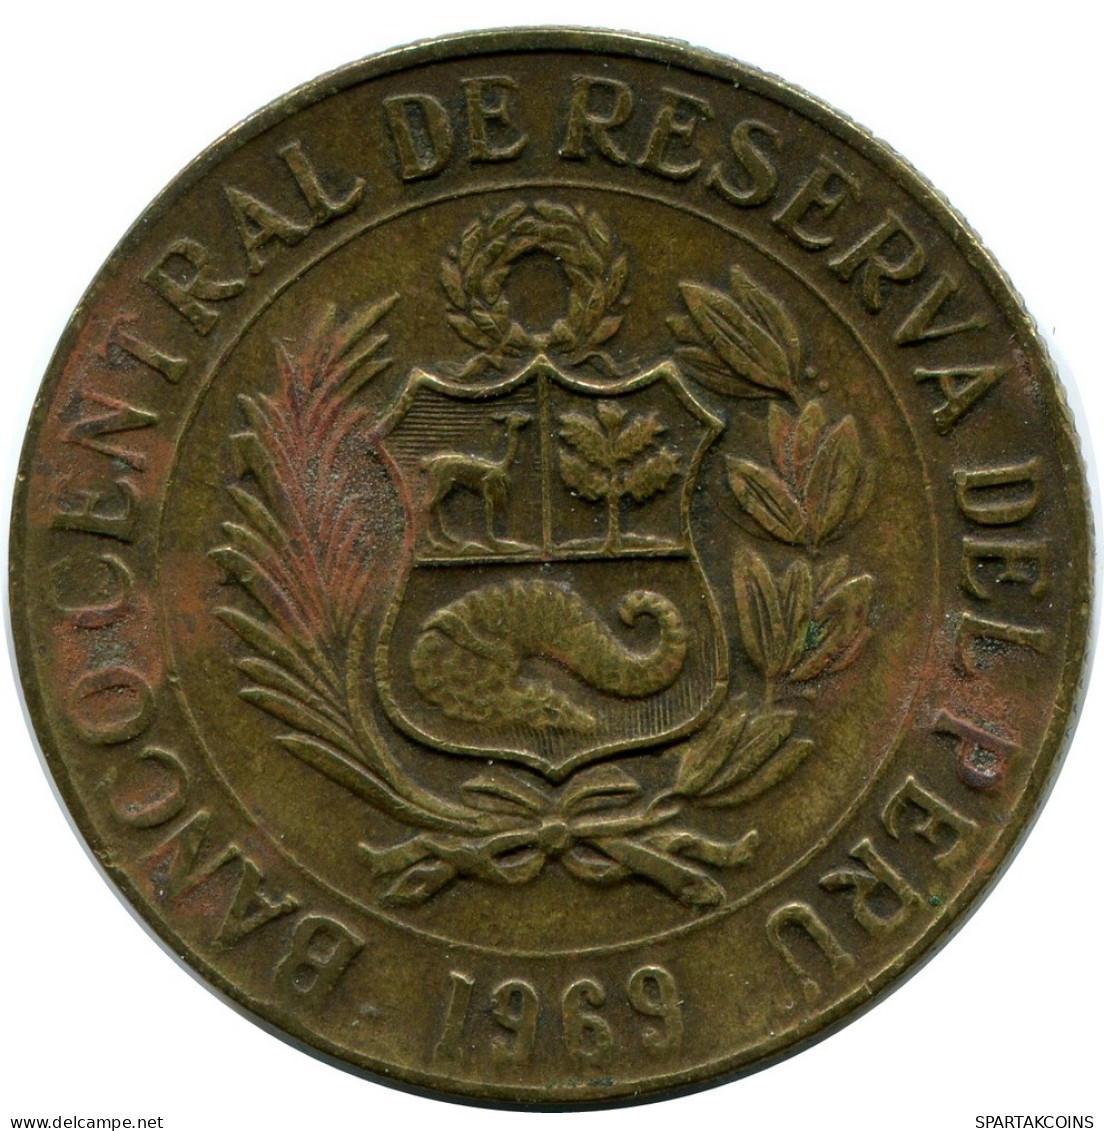 1 SOL 1969 PERU Coin #AZ082.U.A - Peru